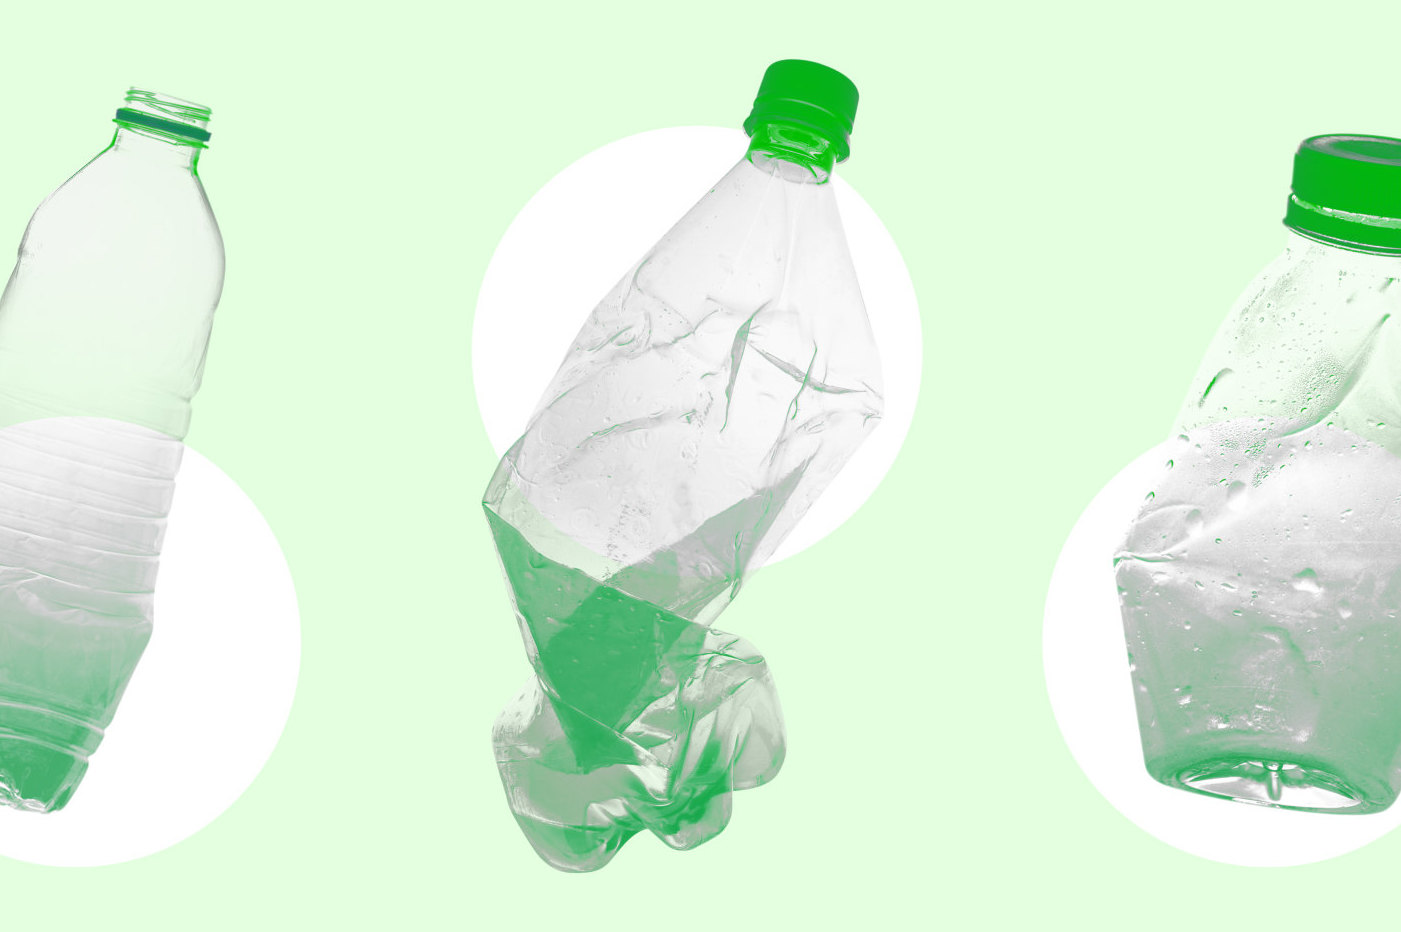 Поделки своими руками из пластиковых бутылок могут быть очень красивыми!